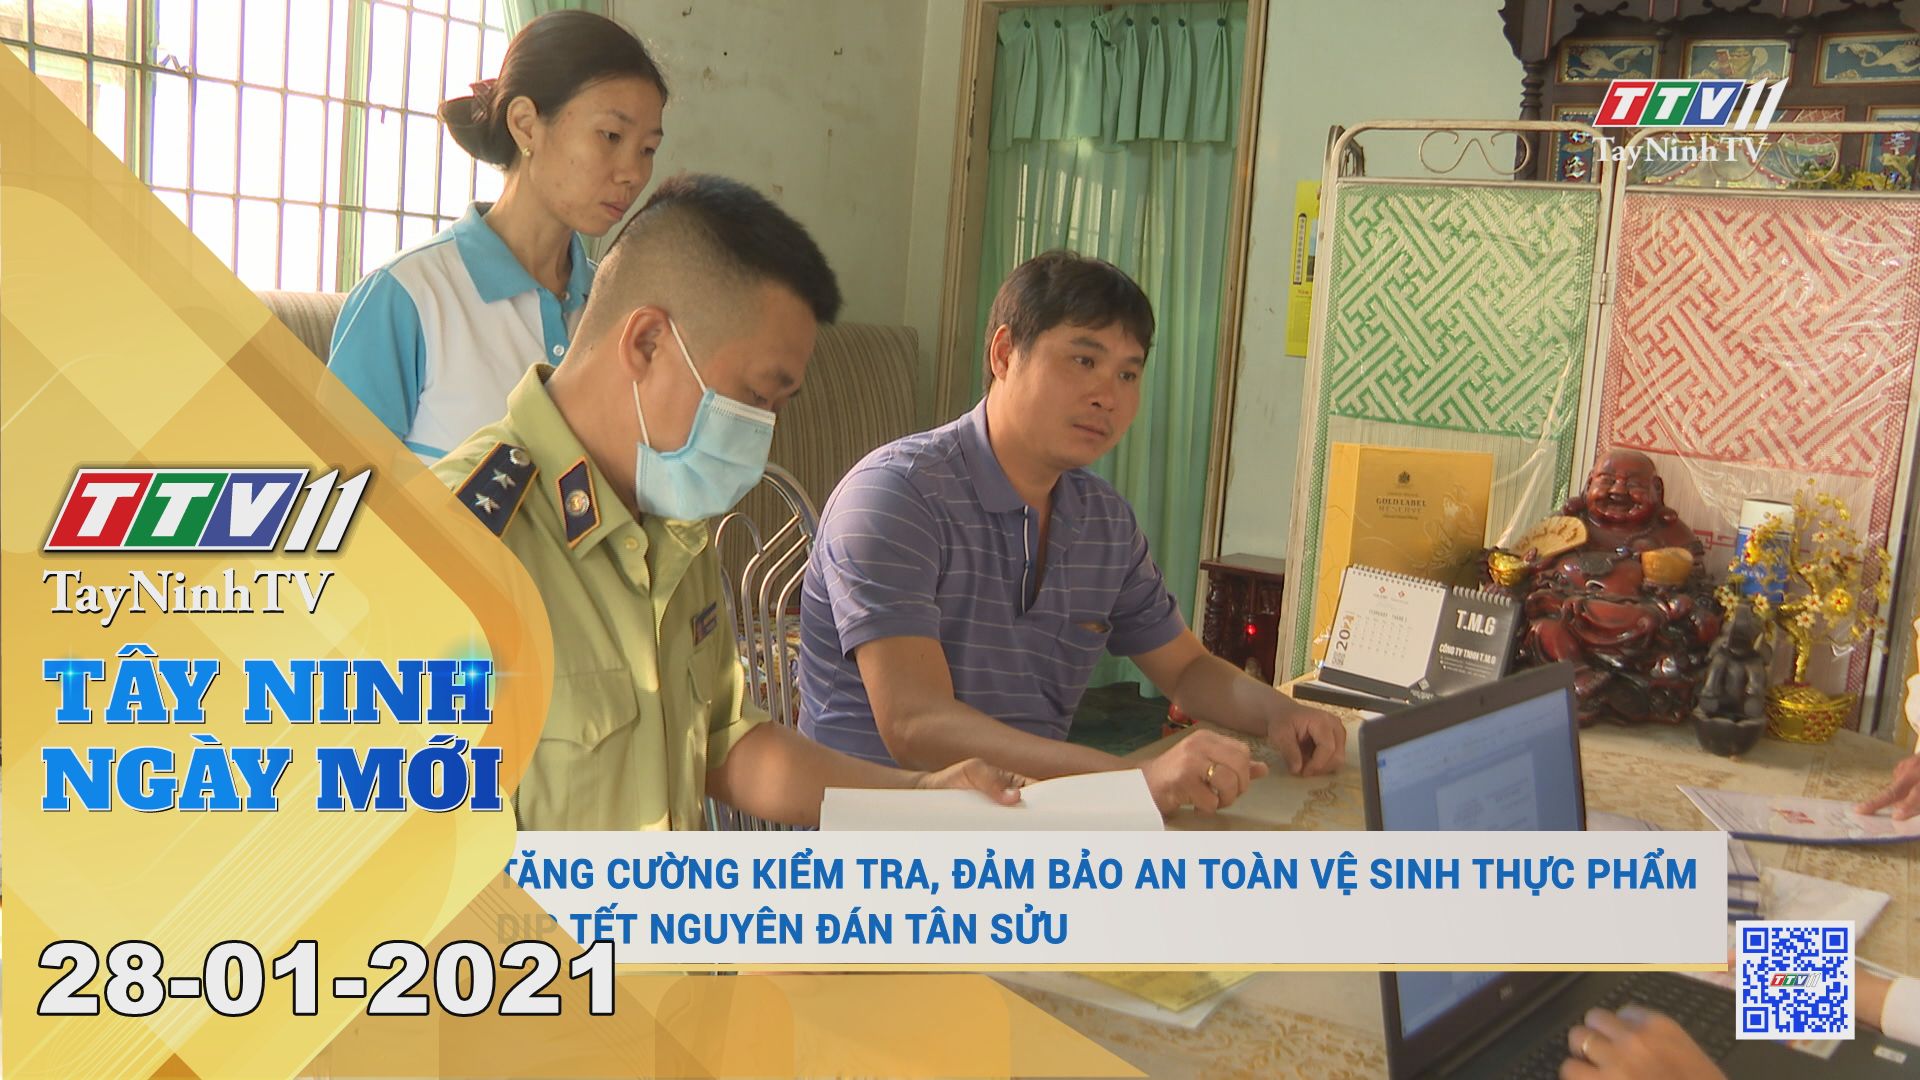 Tây Ninh Ngày Mới 28-01-2021 | Tin tức hôm nay | TayNinhTV 